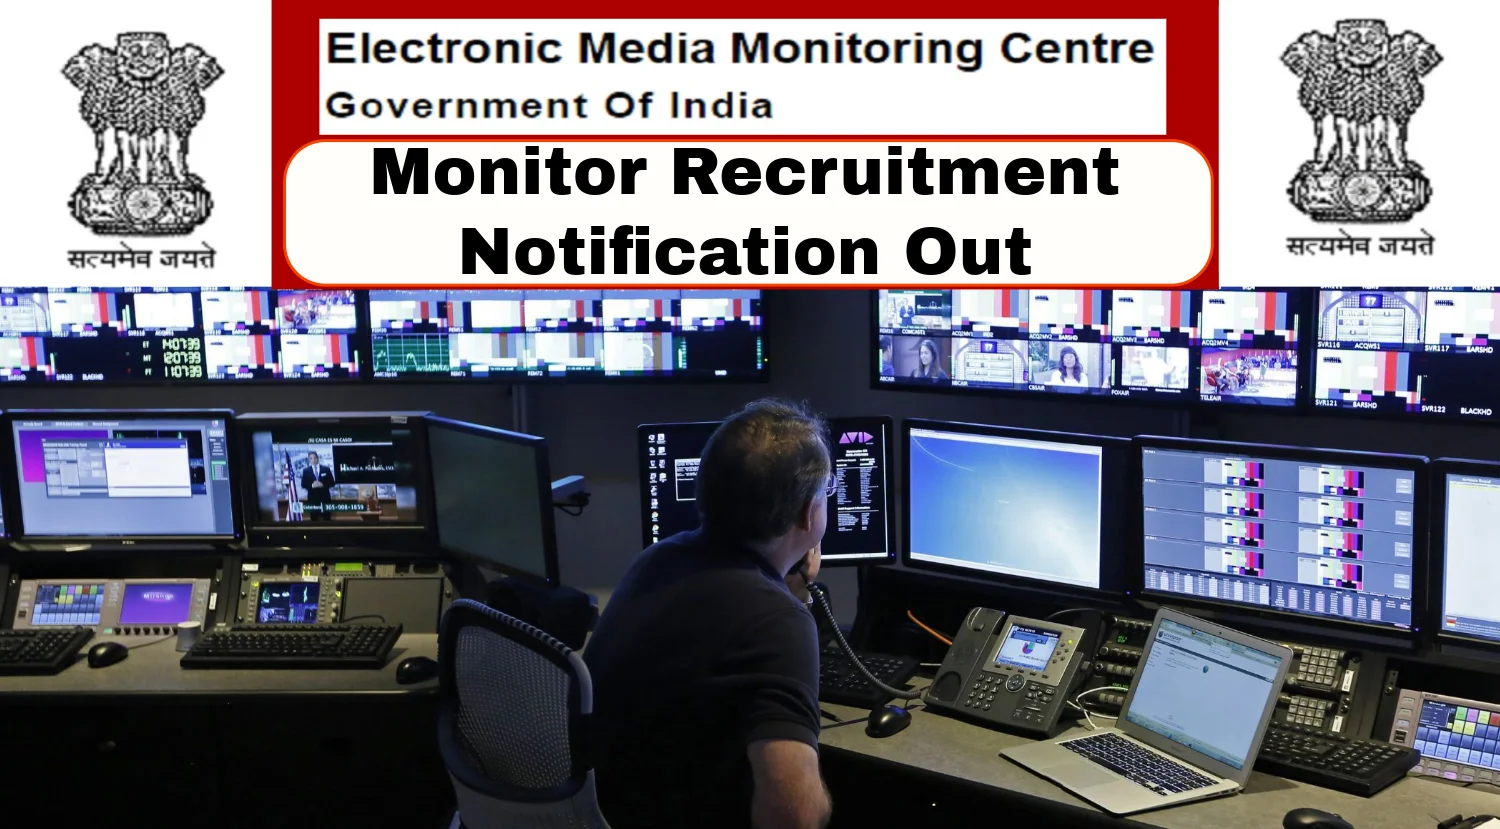 BECIL Monitor Recruitment at EMMC Delhi